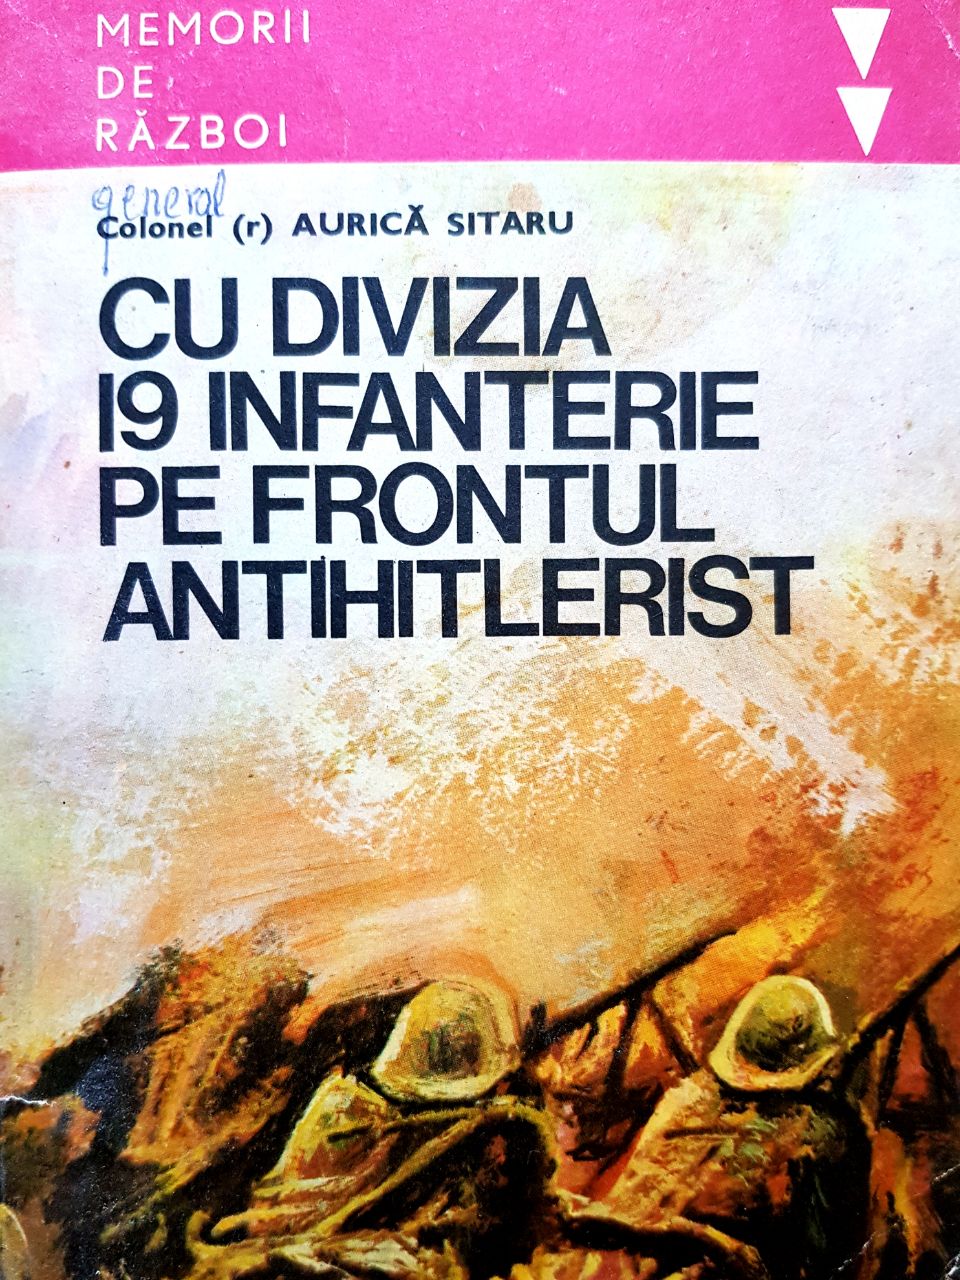 Ziua de 23 august 1944, așa cum a fost trăită de căpitanul Aurică Sitaru în cadrul Diviziei 19 Infanterie a Armatei Române. FOTO ARHIVĂ